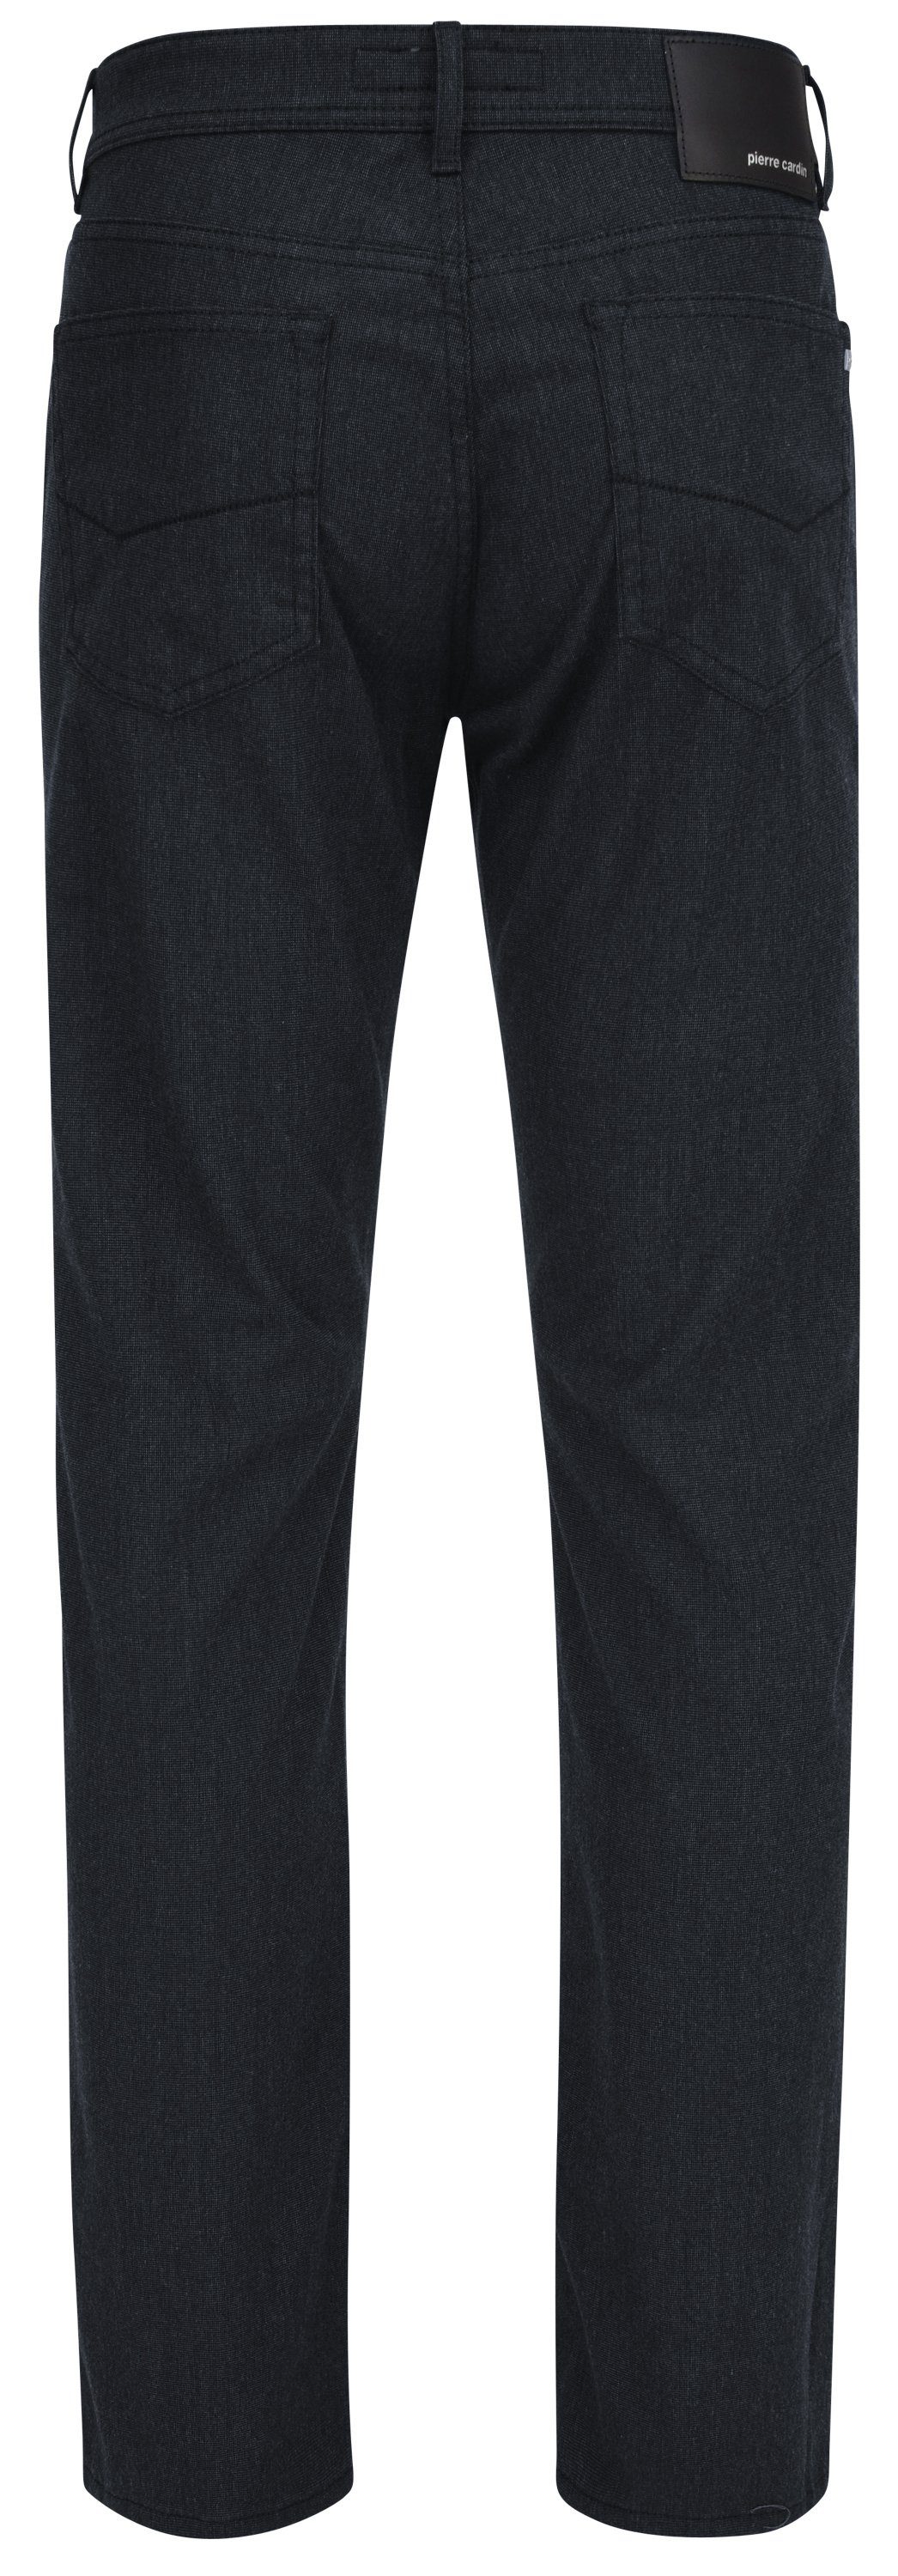 Pierre Cardin 5-Pocket-Jeans PIERRE CARDIN - VOYAGE marine LYON 3091 4715.69